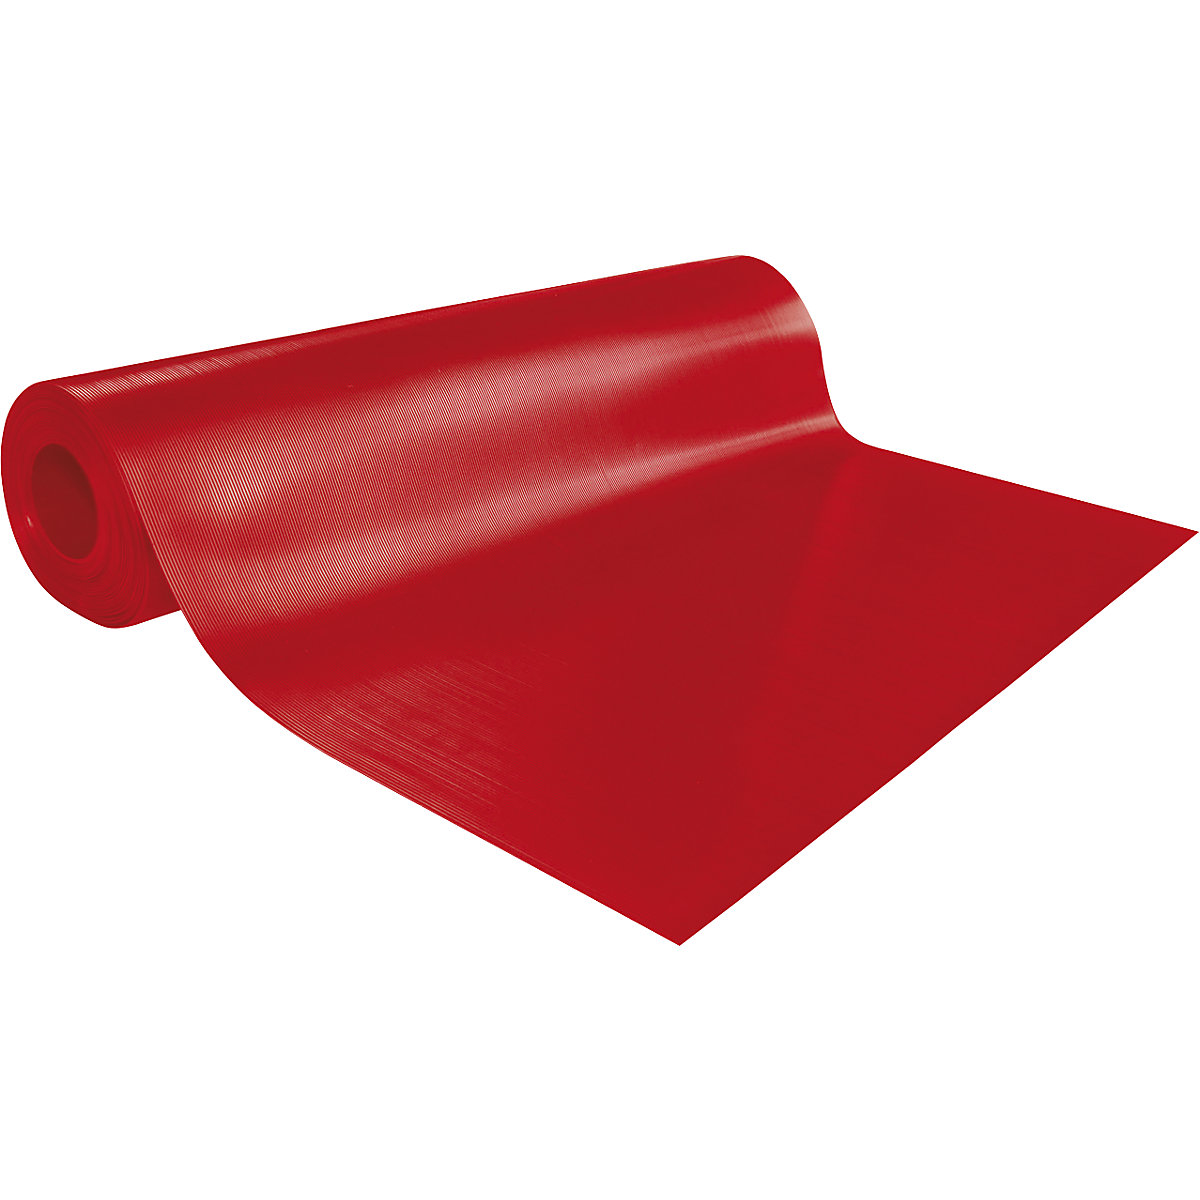 Podlahová rohožka a rohožka pod pracovný stôl, prírez od 1 bežného metra, červená